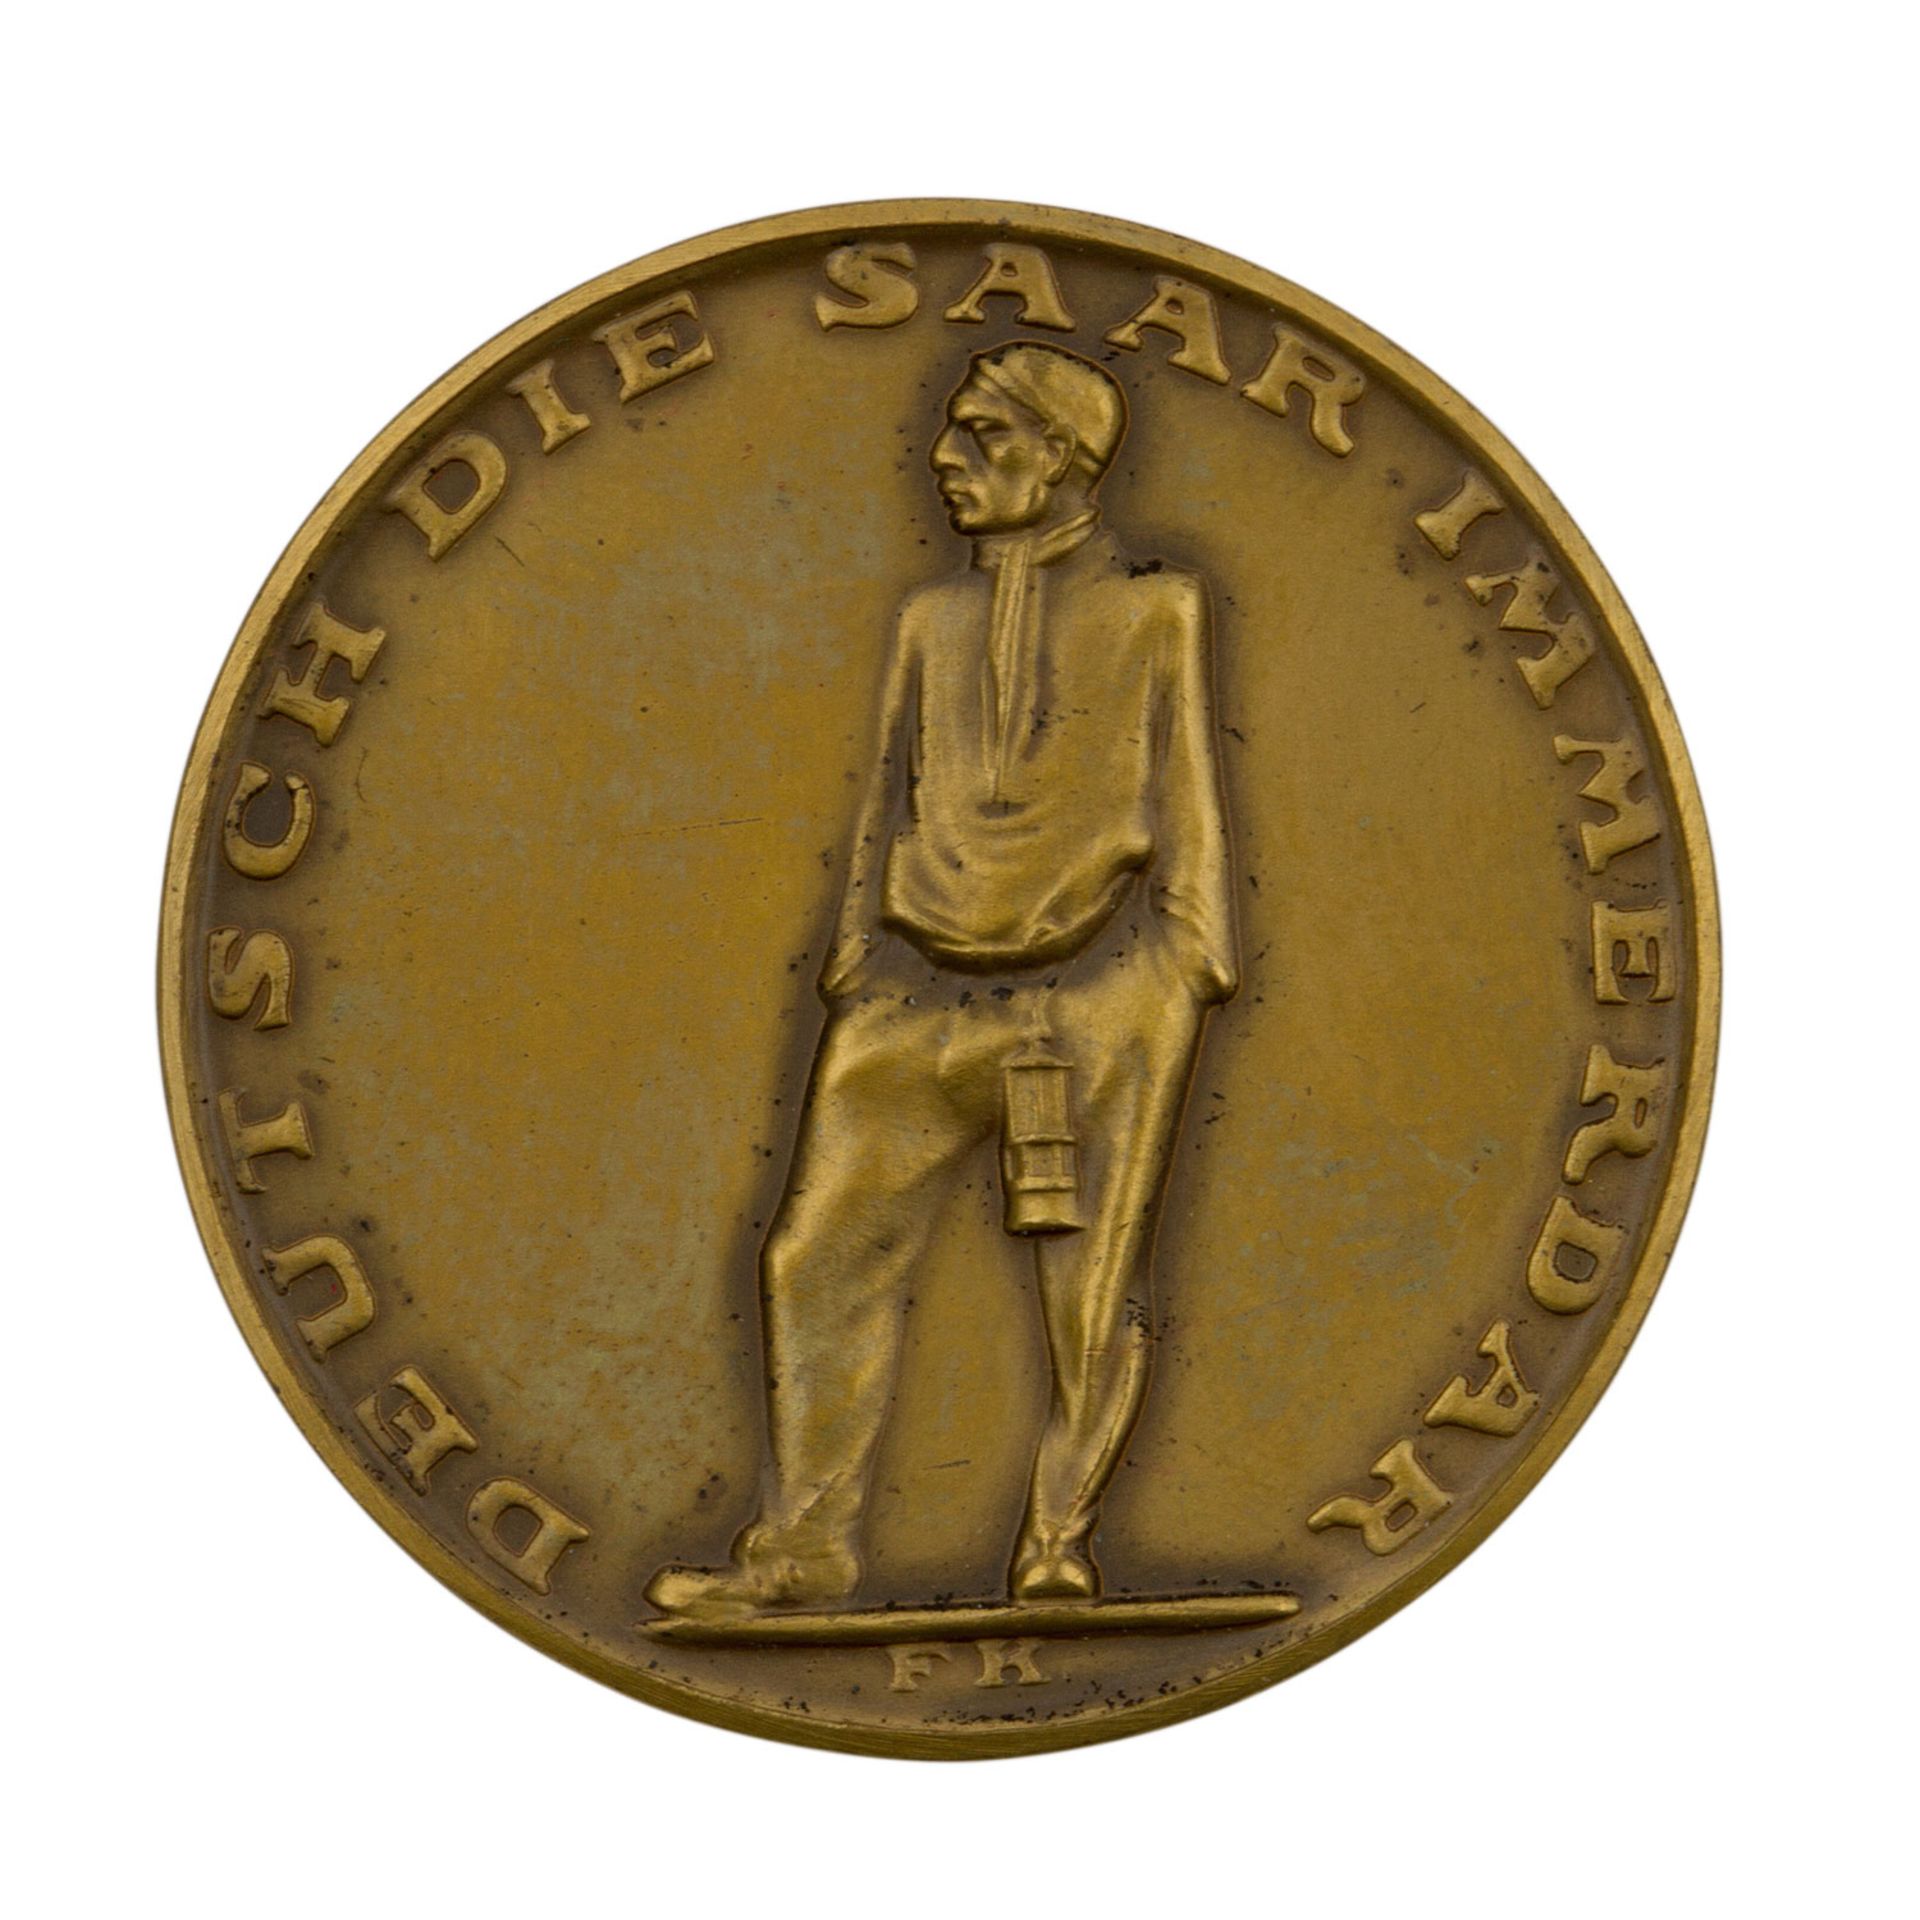 Medaille "Deutsch die Saar immerdar" imOriginaletui. Br.-Med. 1935 von F. Krischker. Volksabstimmung - Bild 2 aus 3